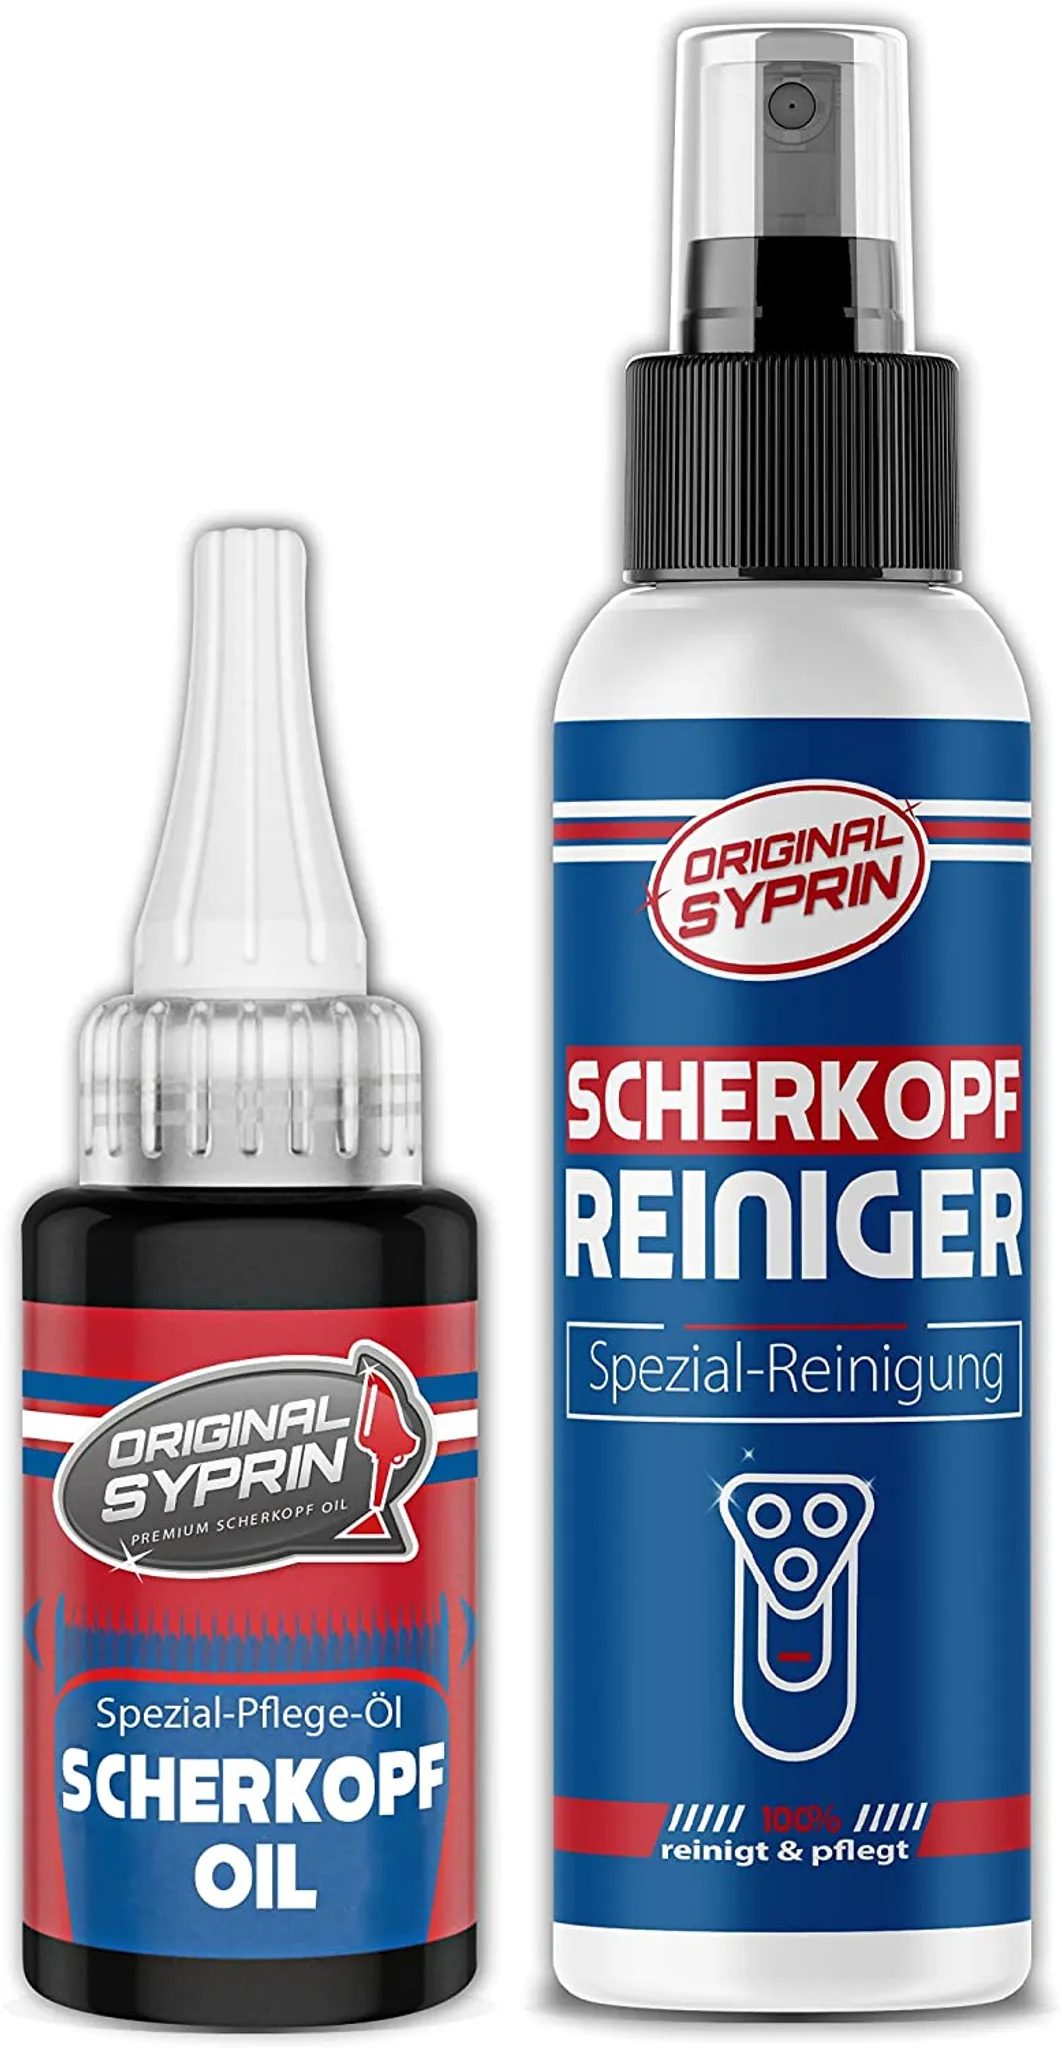 Original Syprin Scherkopföl und